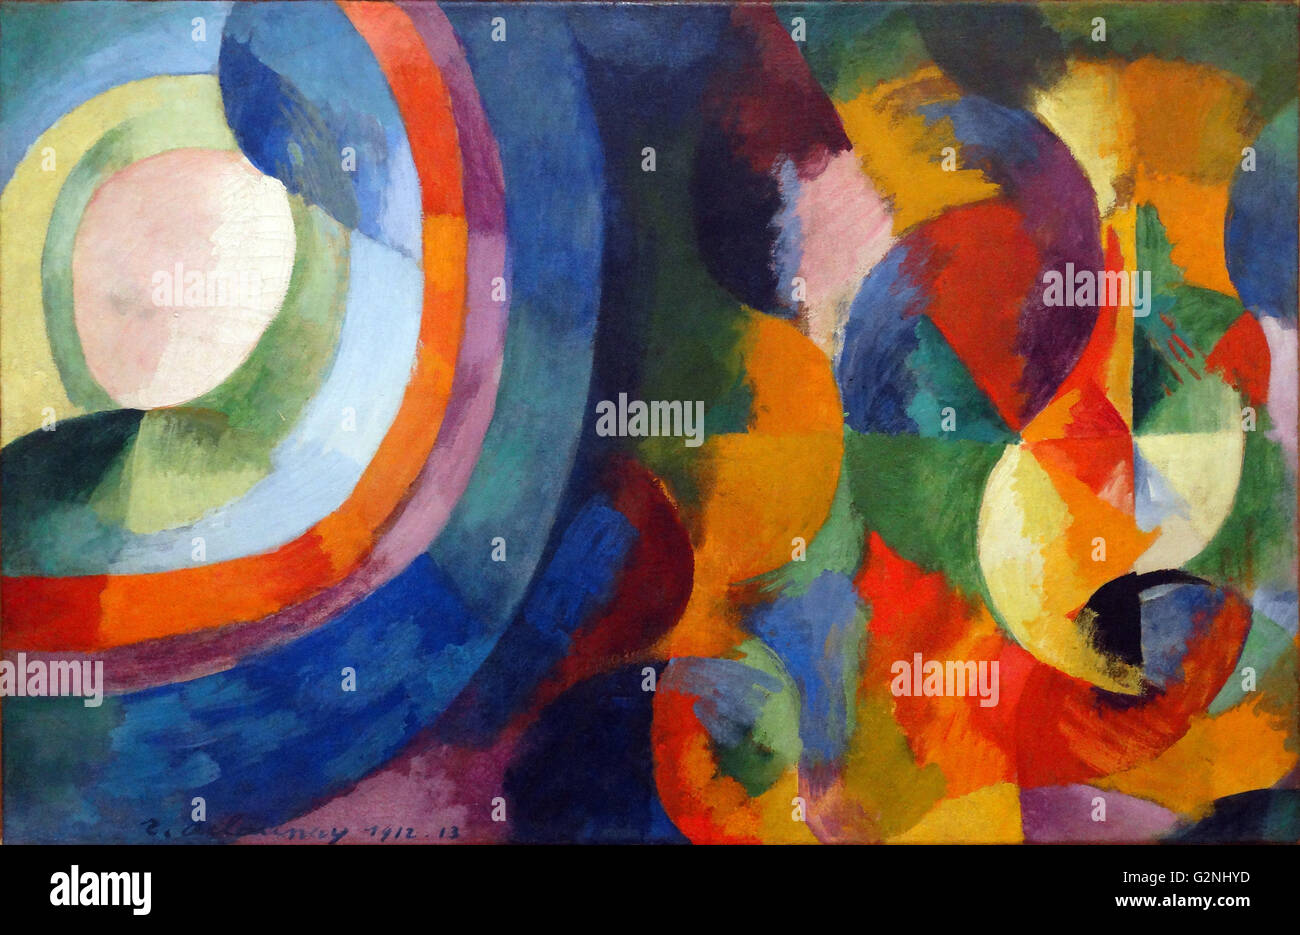 Runde Formen, Sonne, Mond, die von Robert Delaunay (1885-1941) war ein französischer Künstler, der mit seiner Frau Sonia Delaunay und andere, der orphiker Kunst Bewegung filmphilharmonie", bekannt für seine Verwendung von starken Farben und geometrische Formen. Seine späteren Werke abstrakter, erinnert an Paul Klee. Stockfoto